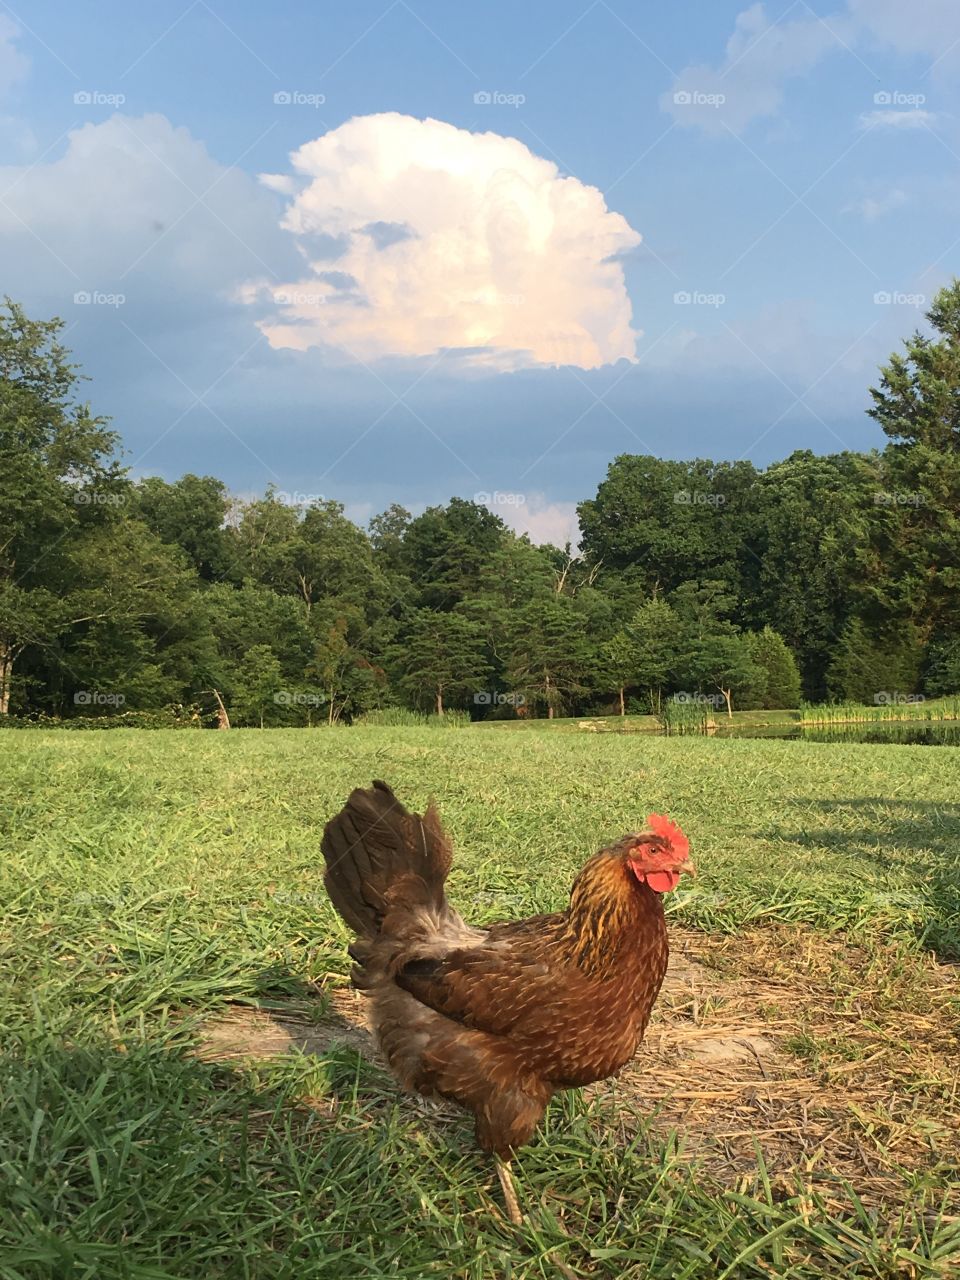 Chicken under a cloud